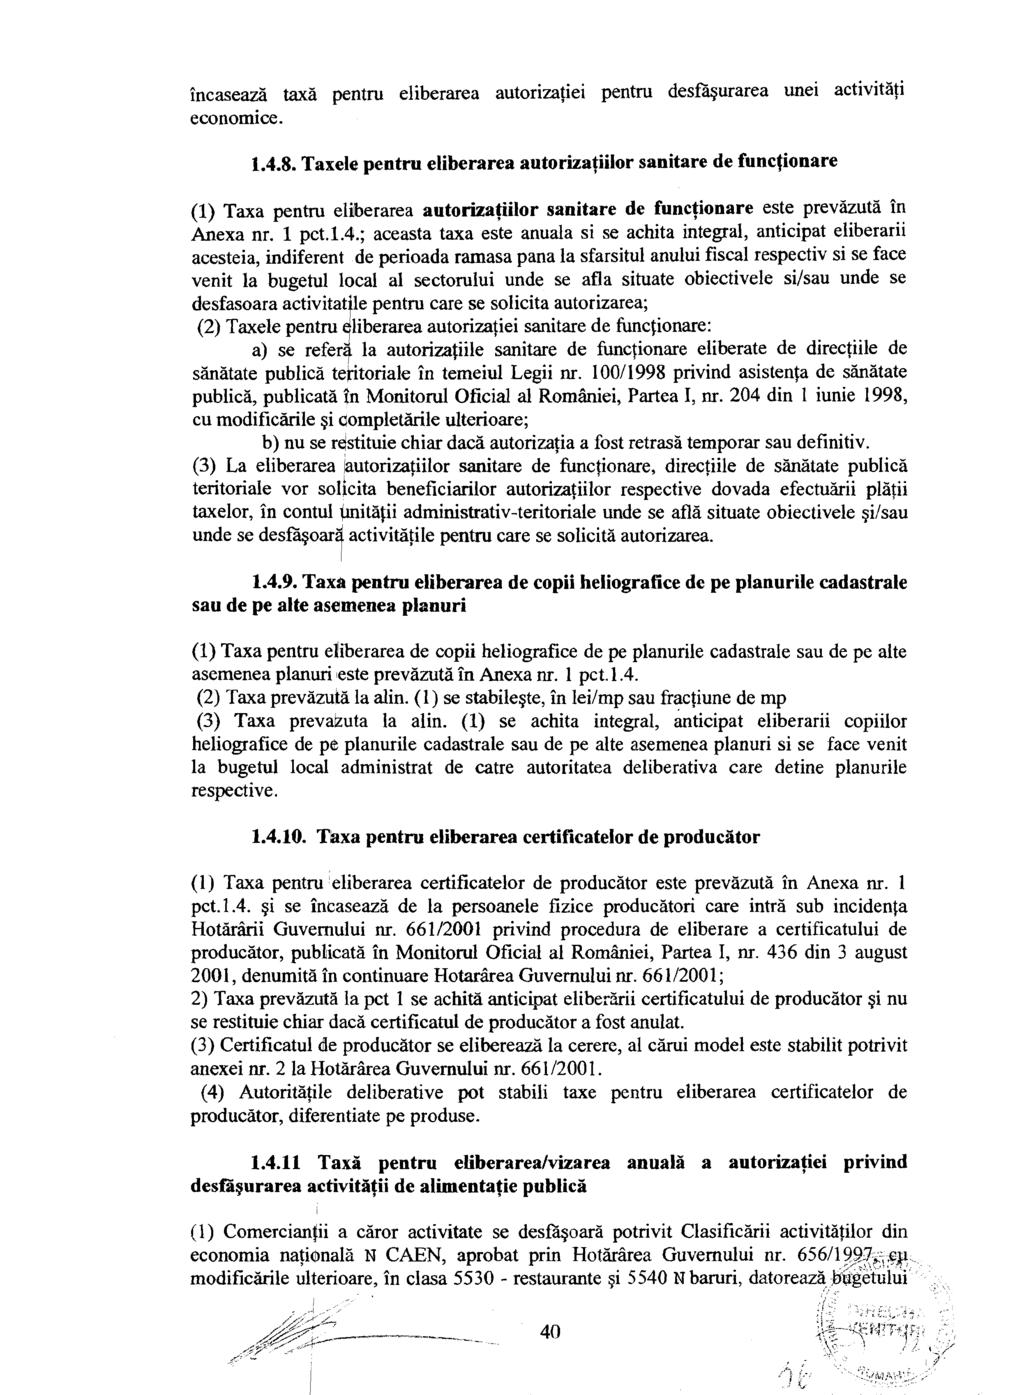 incaseazii taxb pentru eliberarea autorizqiei pentru desfigurarea unei activitiiji economice. 1.4.8.